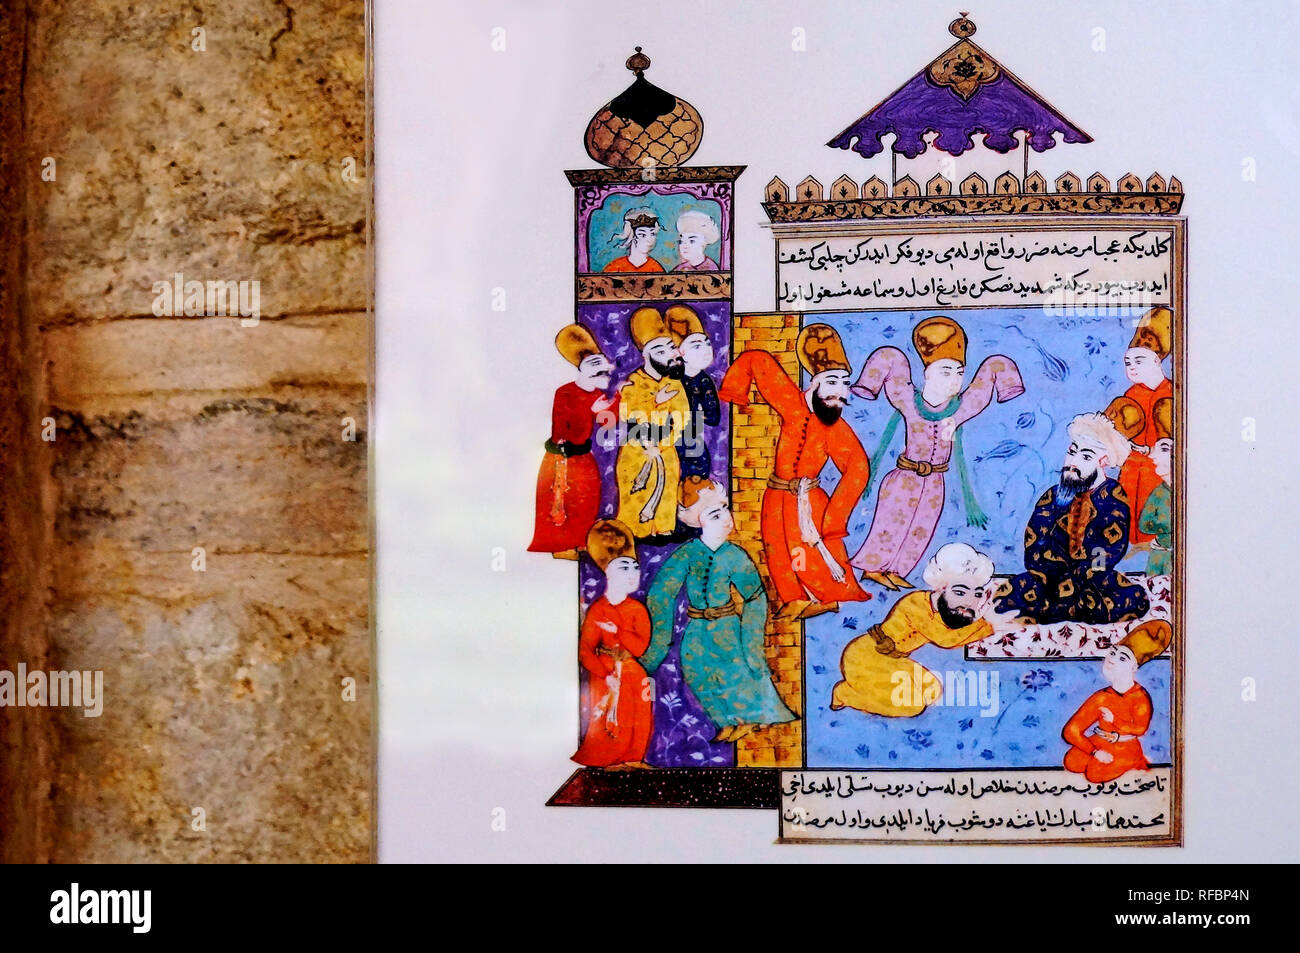 Musée de Mevlana. Représentant des vêtements miniatures Mevlevi, mausolée de Jalal ad-Din Muhammad Rumi. Konya, Turquie Banque D'Images